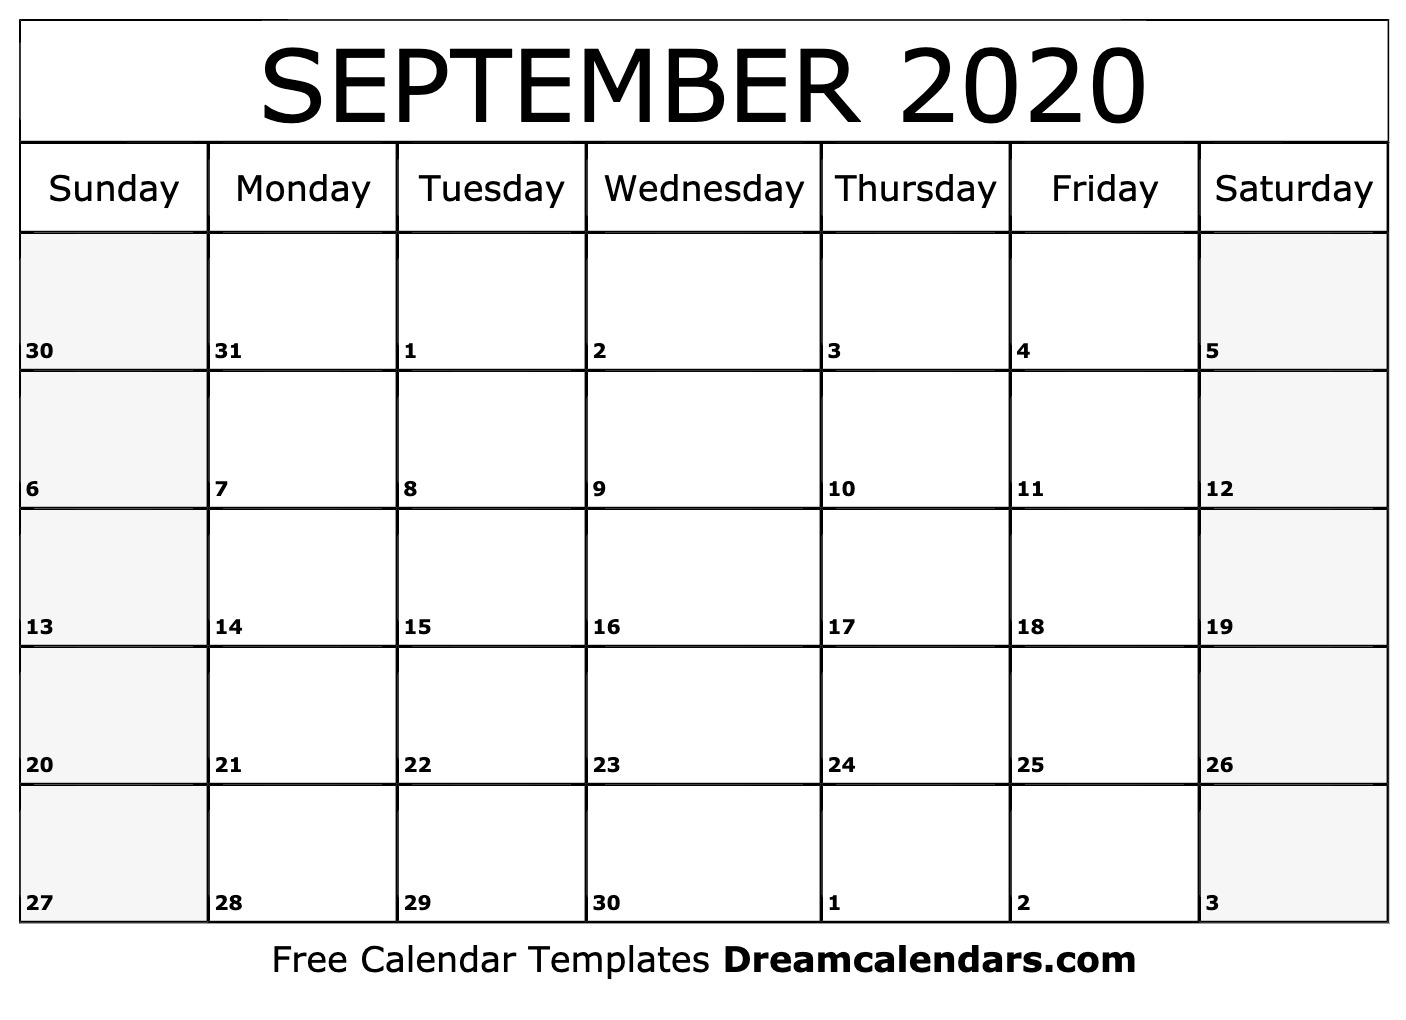  September 2020 Printable Calendar Dream Calendars 1406x1020